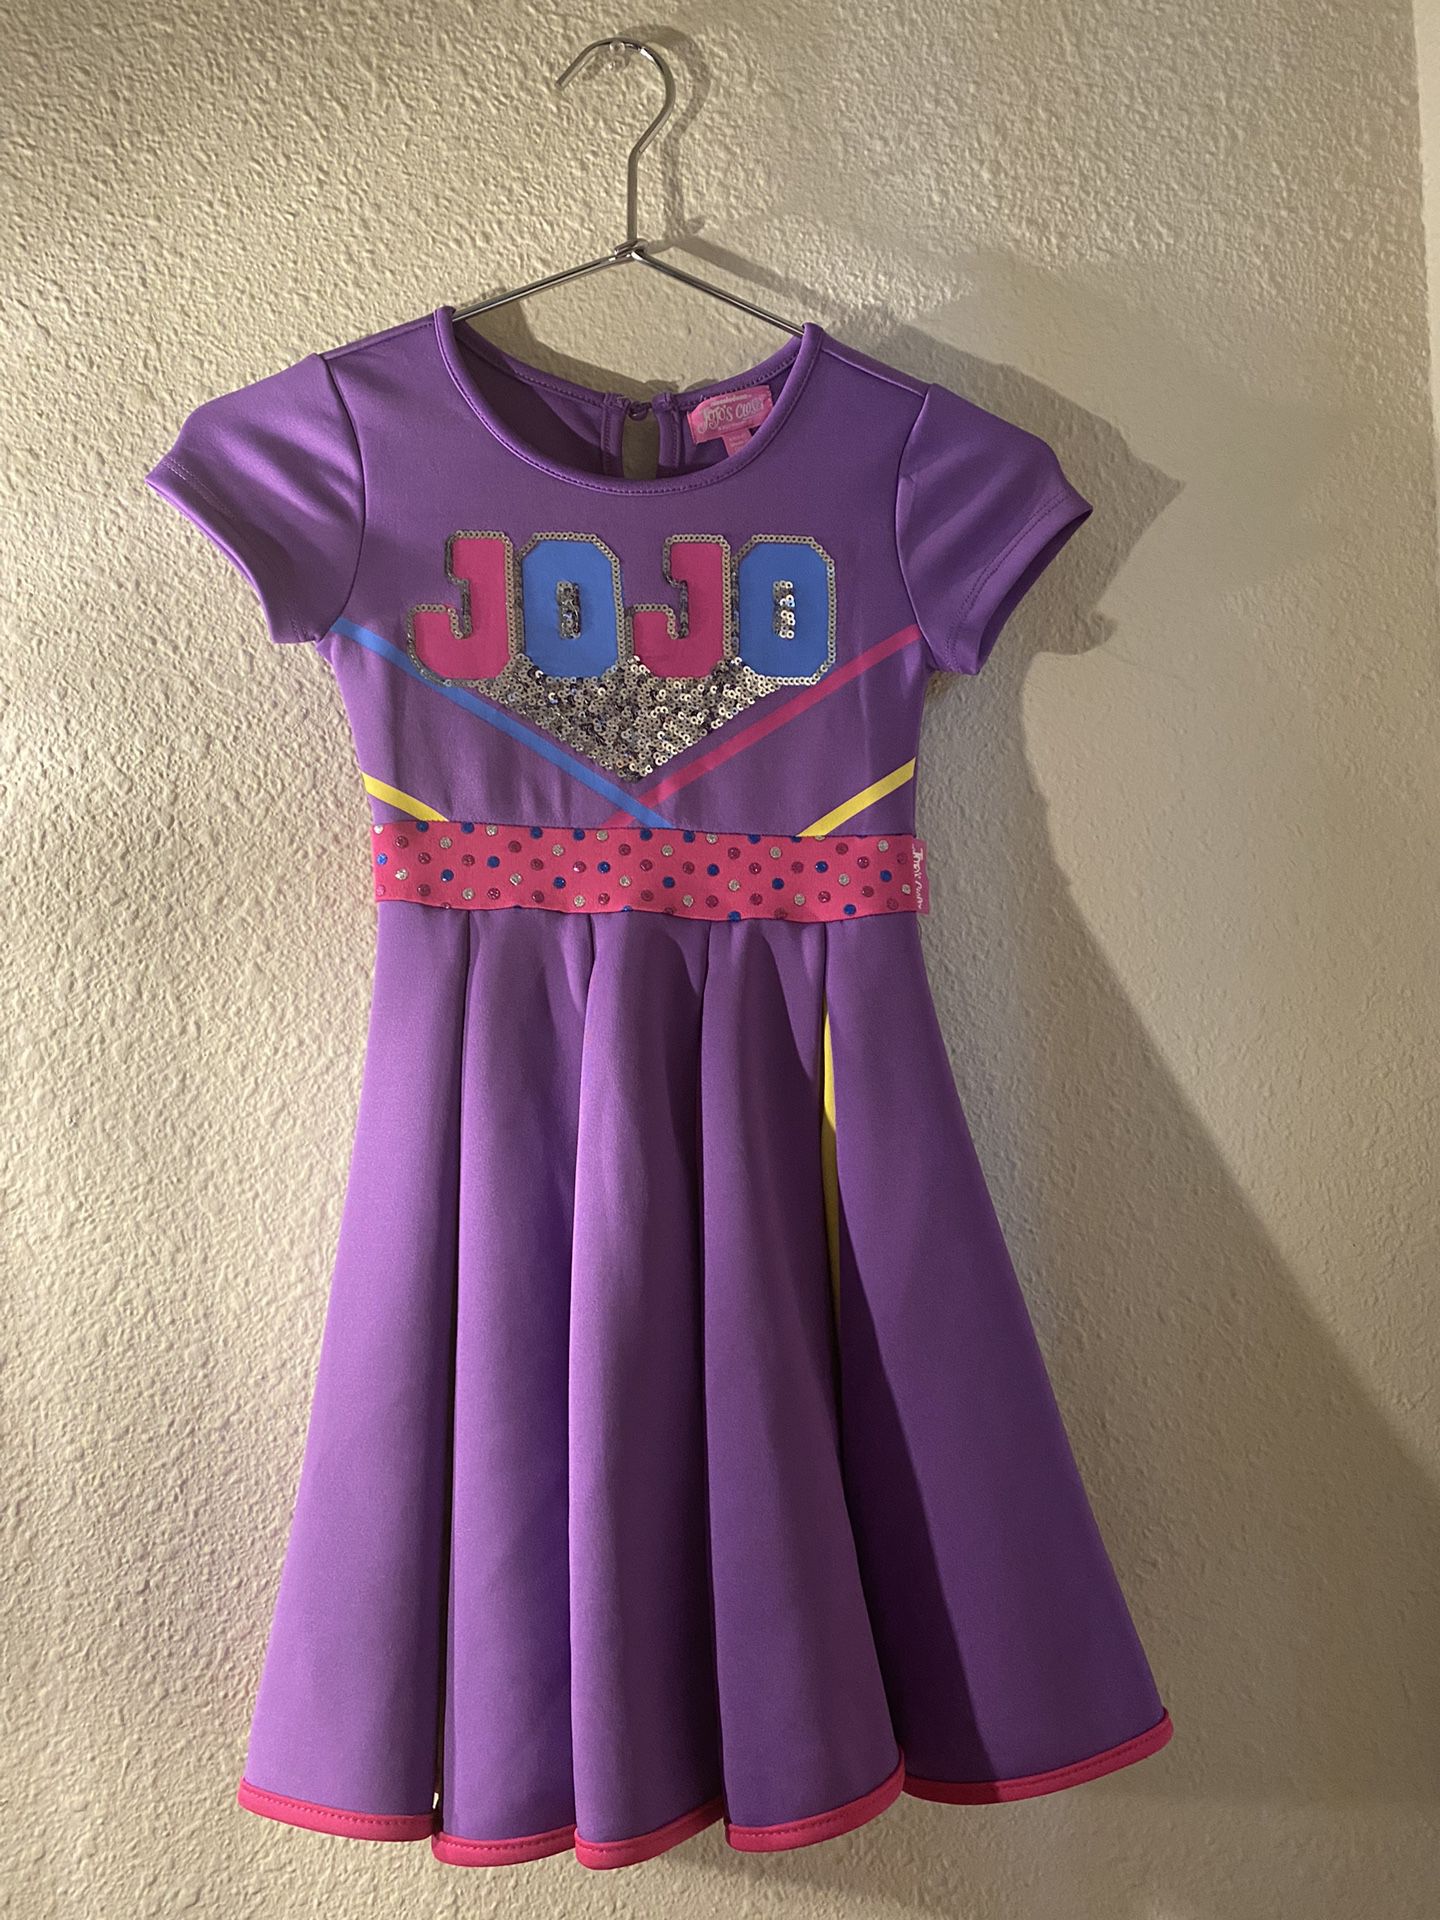 JoJo's Closet Girl's Cheerleader Dress Up Costume